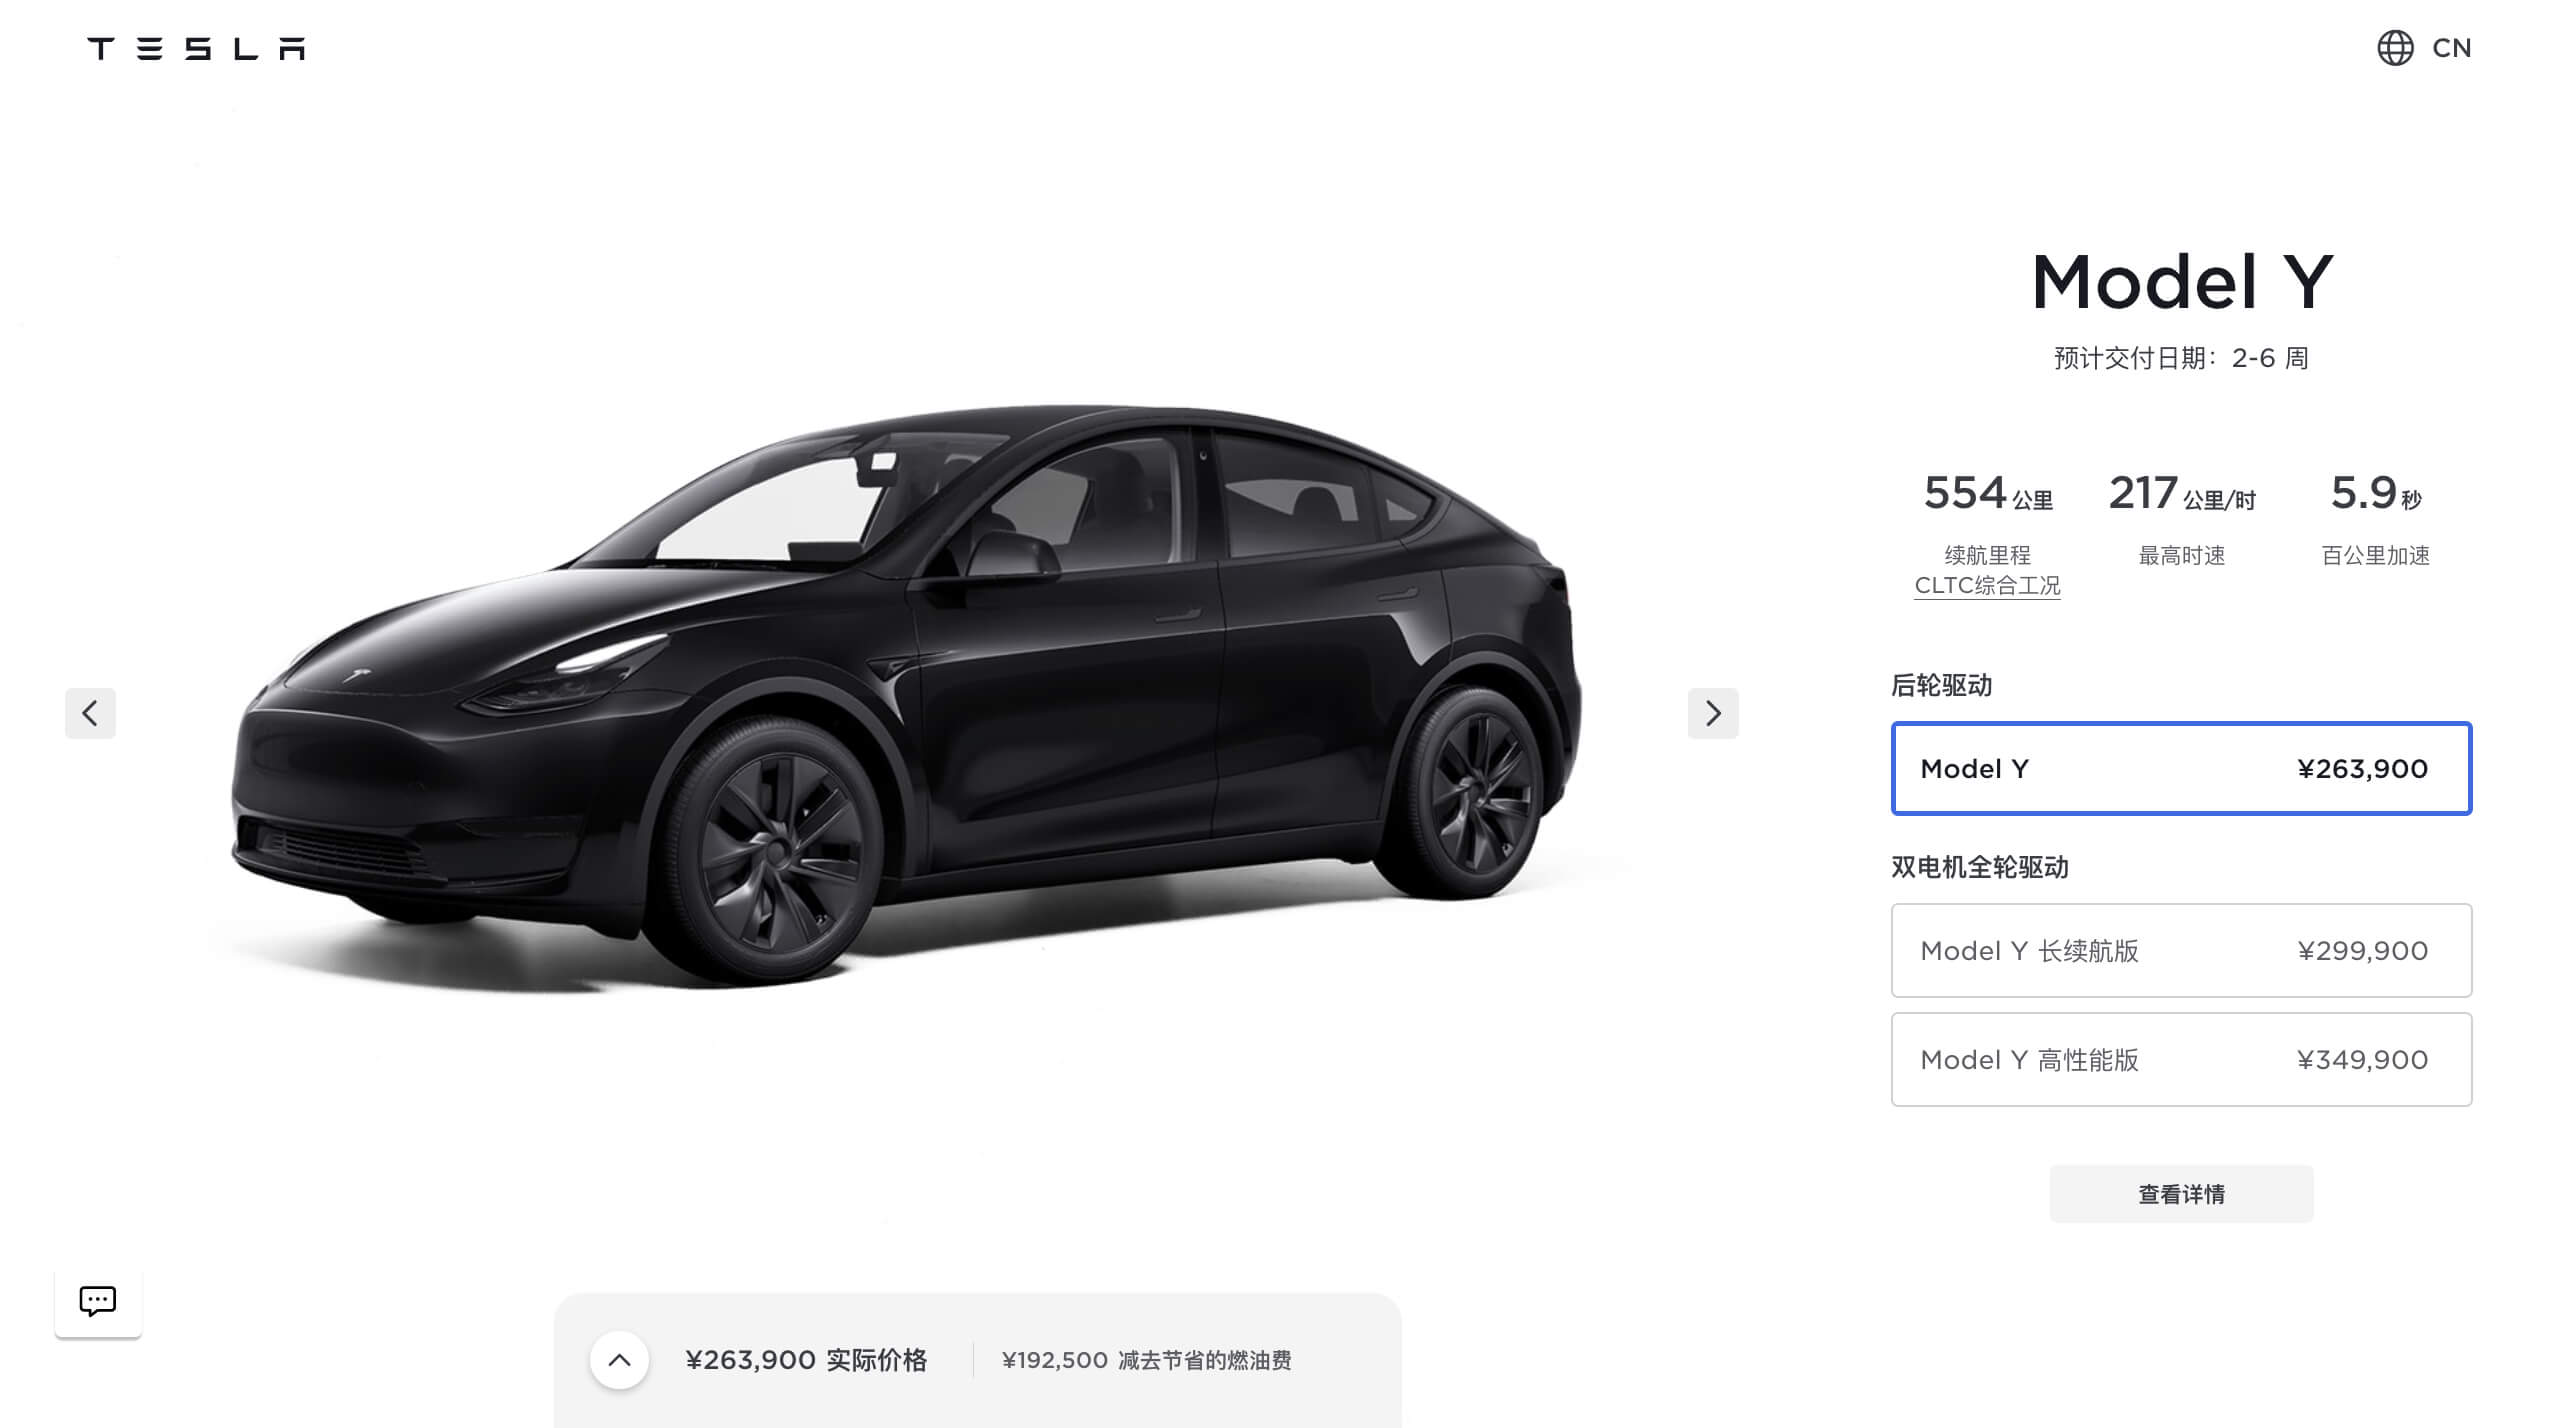 Tesla beginnt mit der Inlandsauslieferung des neuen, in Giga Shanghai gebauten Model Y